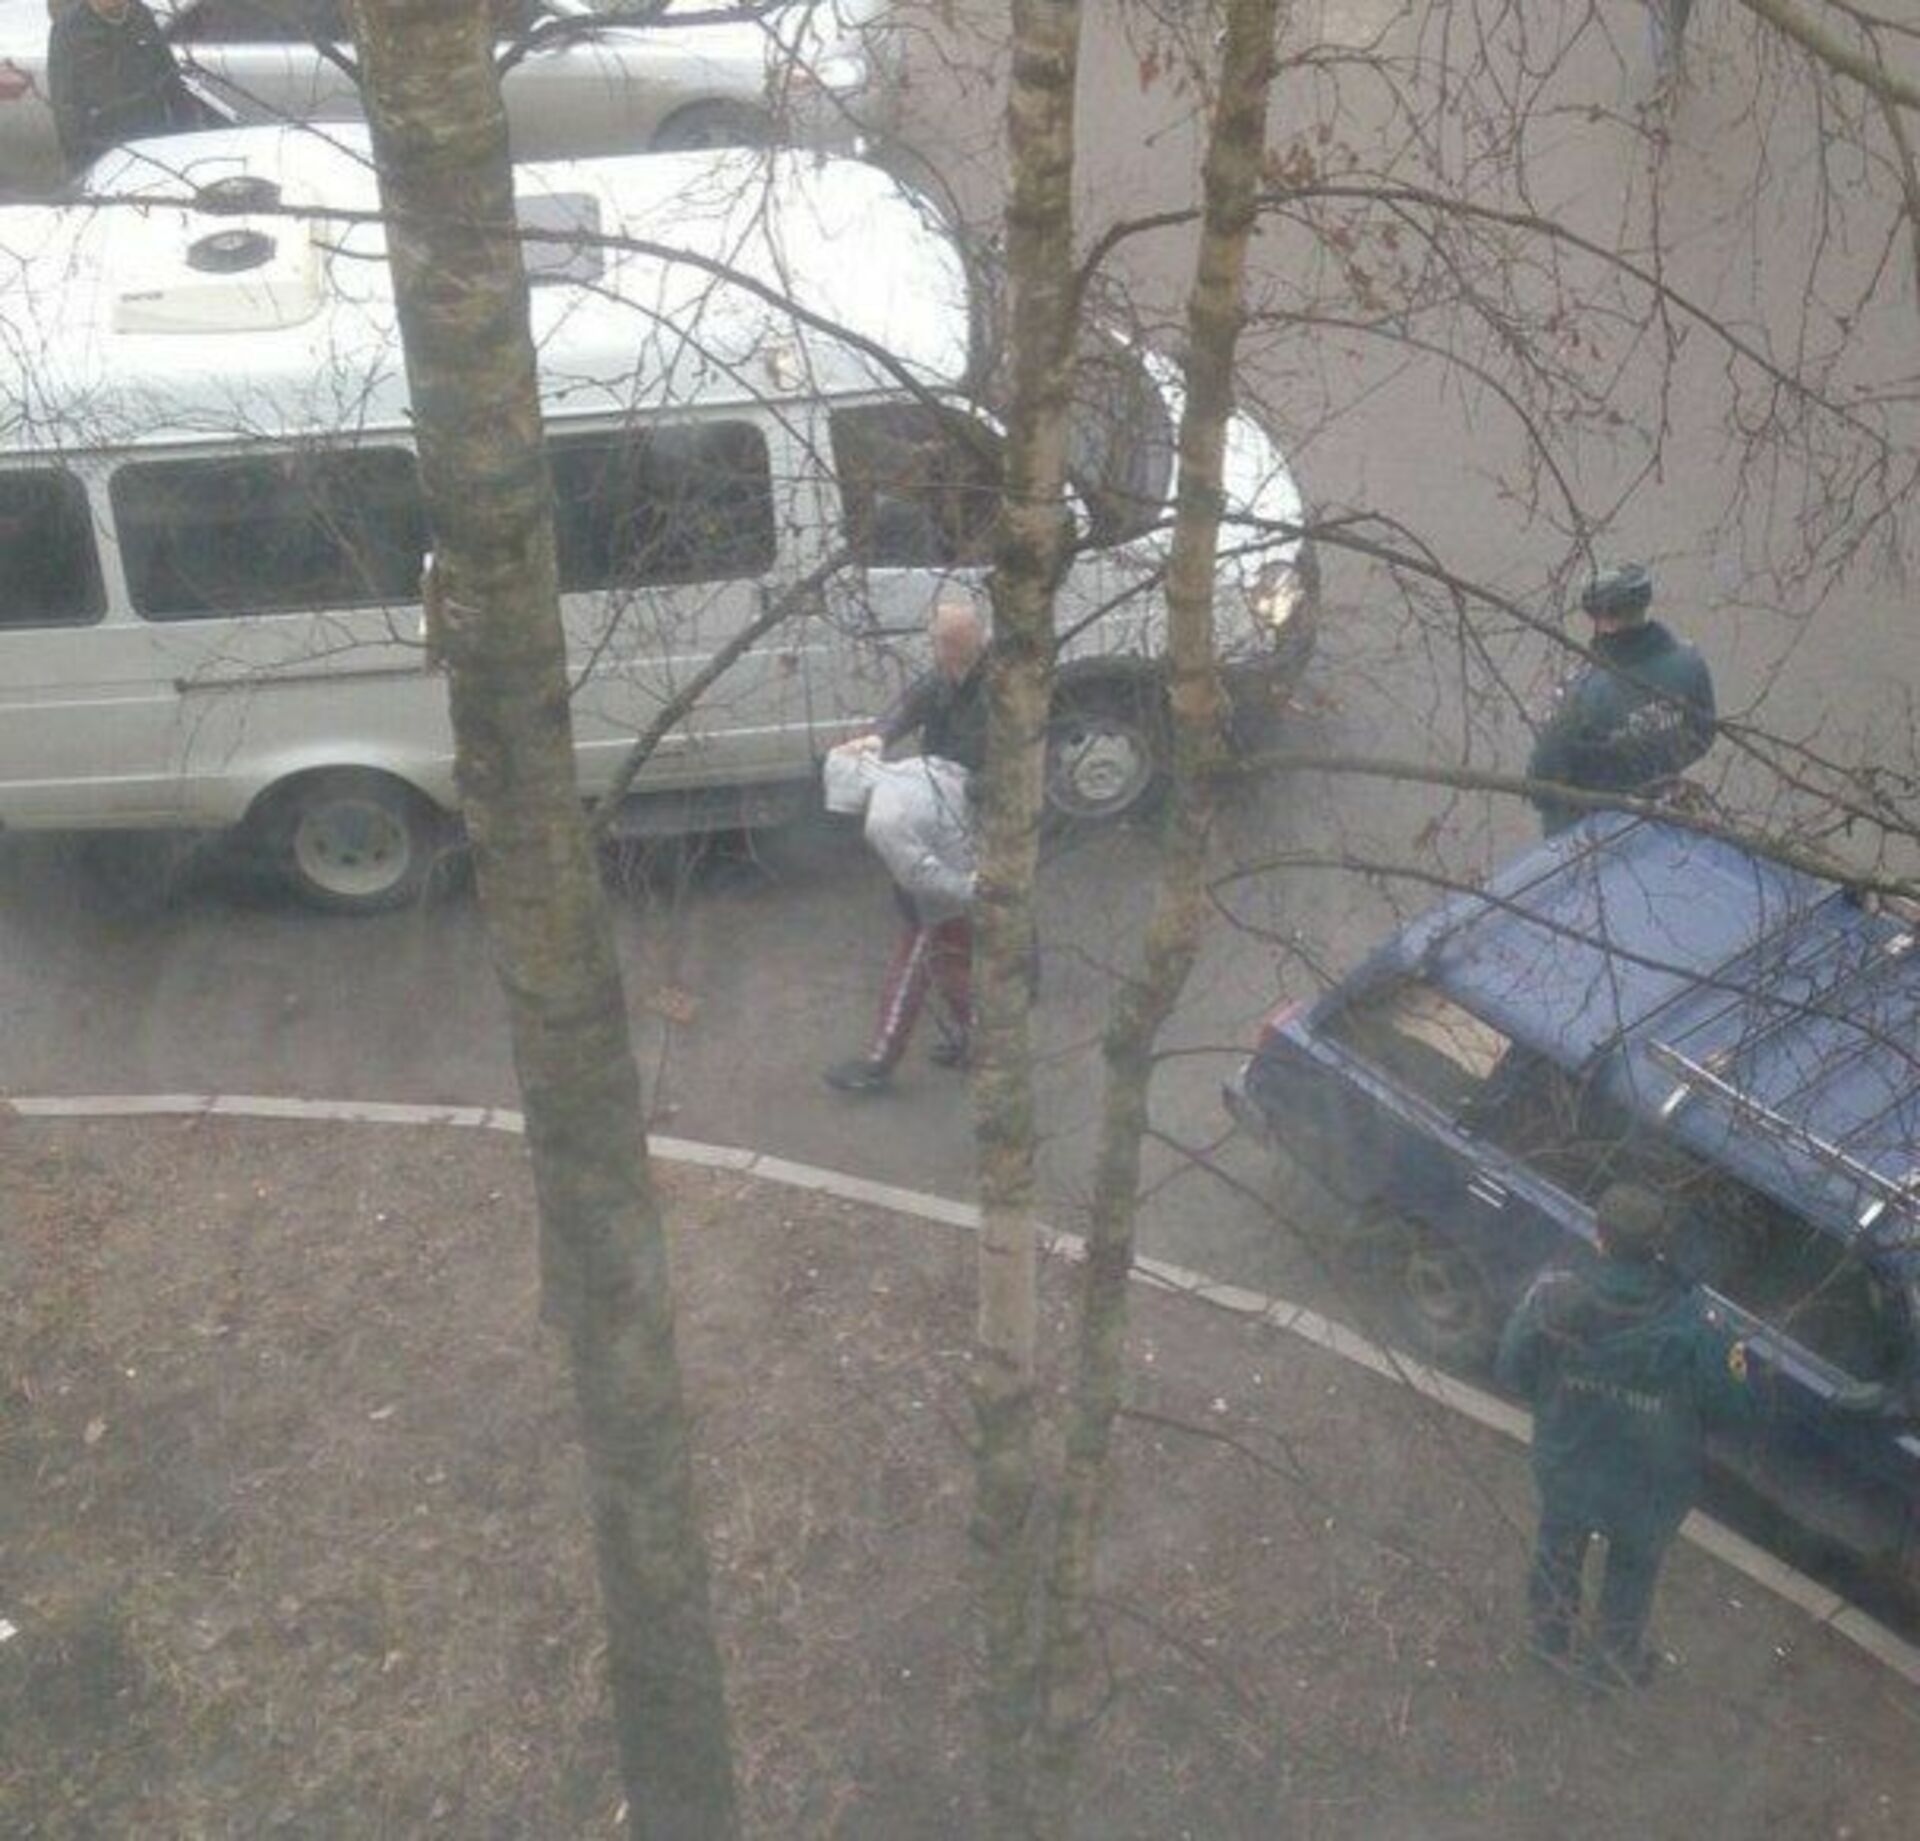 Бомба в питере сегодня. Взрыв на товарищеском проспекте. Оцепление взрывного устройства полицией места происшествия. Санкт-Петербург бомба сегодня. Взрыв на товарищеском проспекте видео.